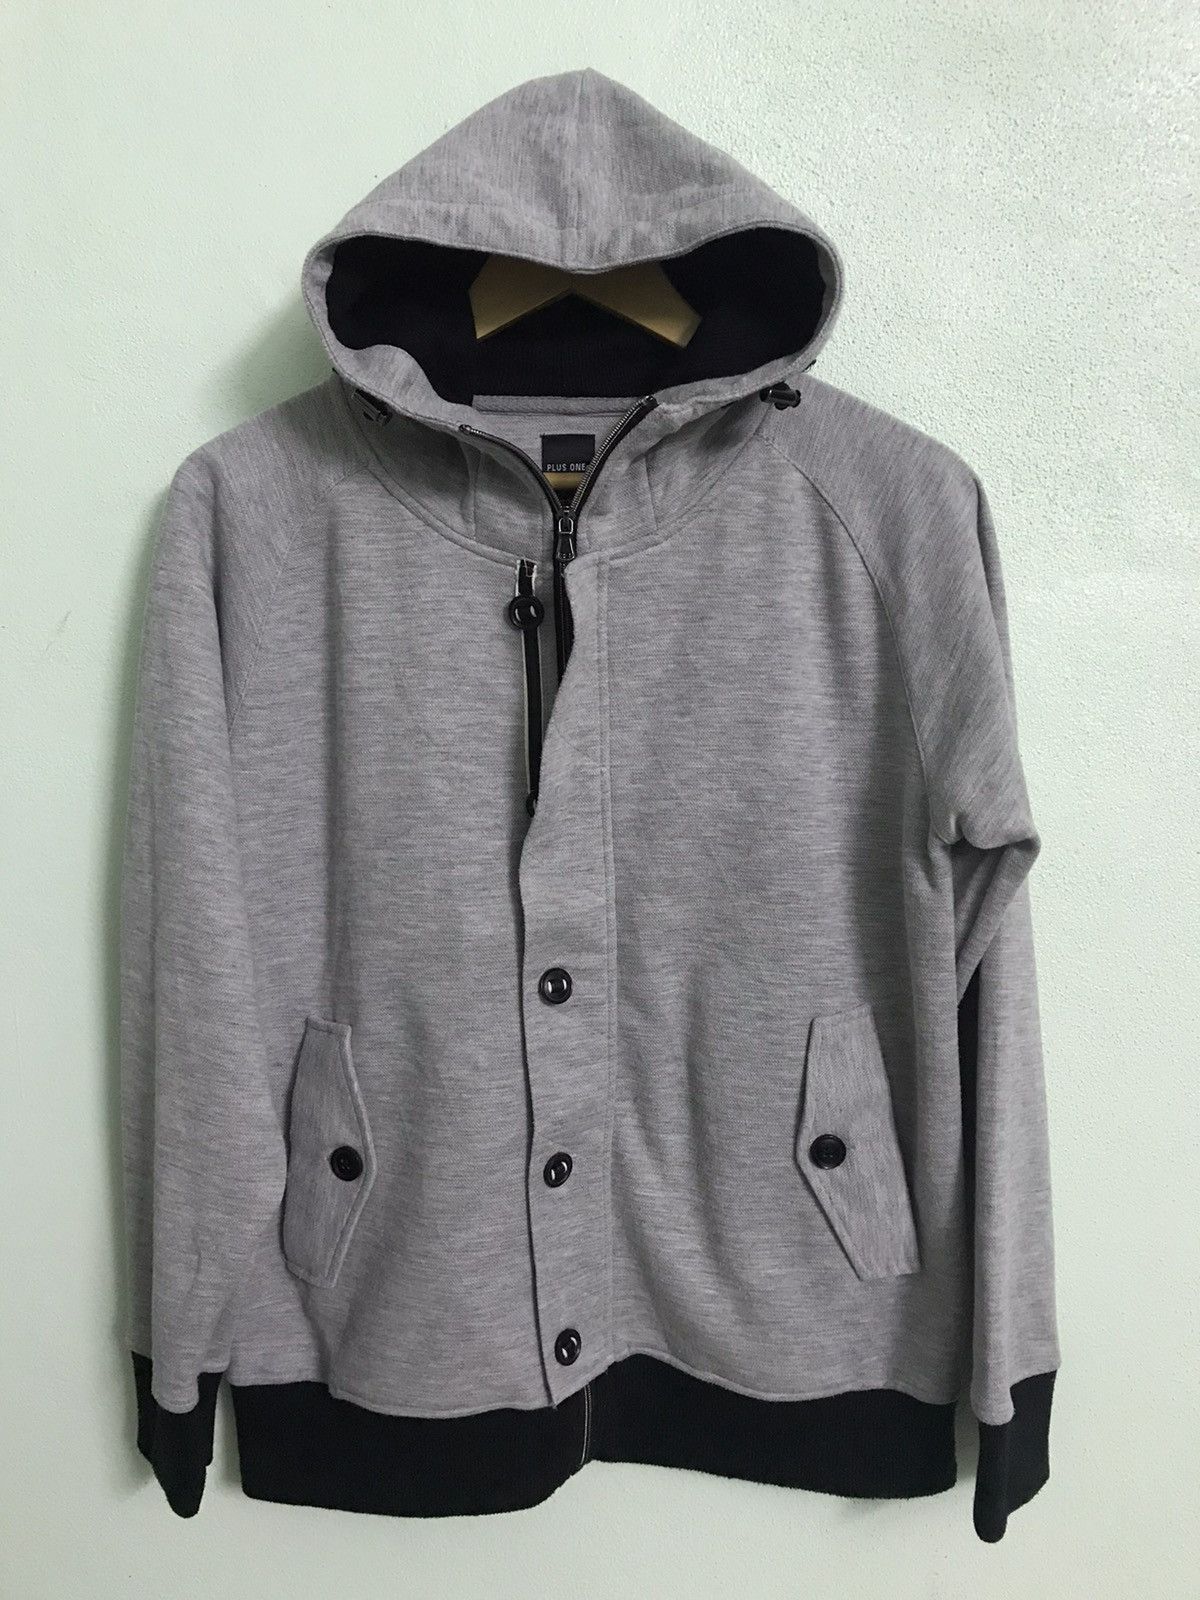 Plus One Clothing - Plus one hoodie jacket - gh0220 - 2